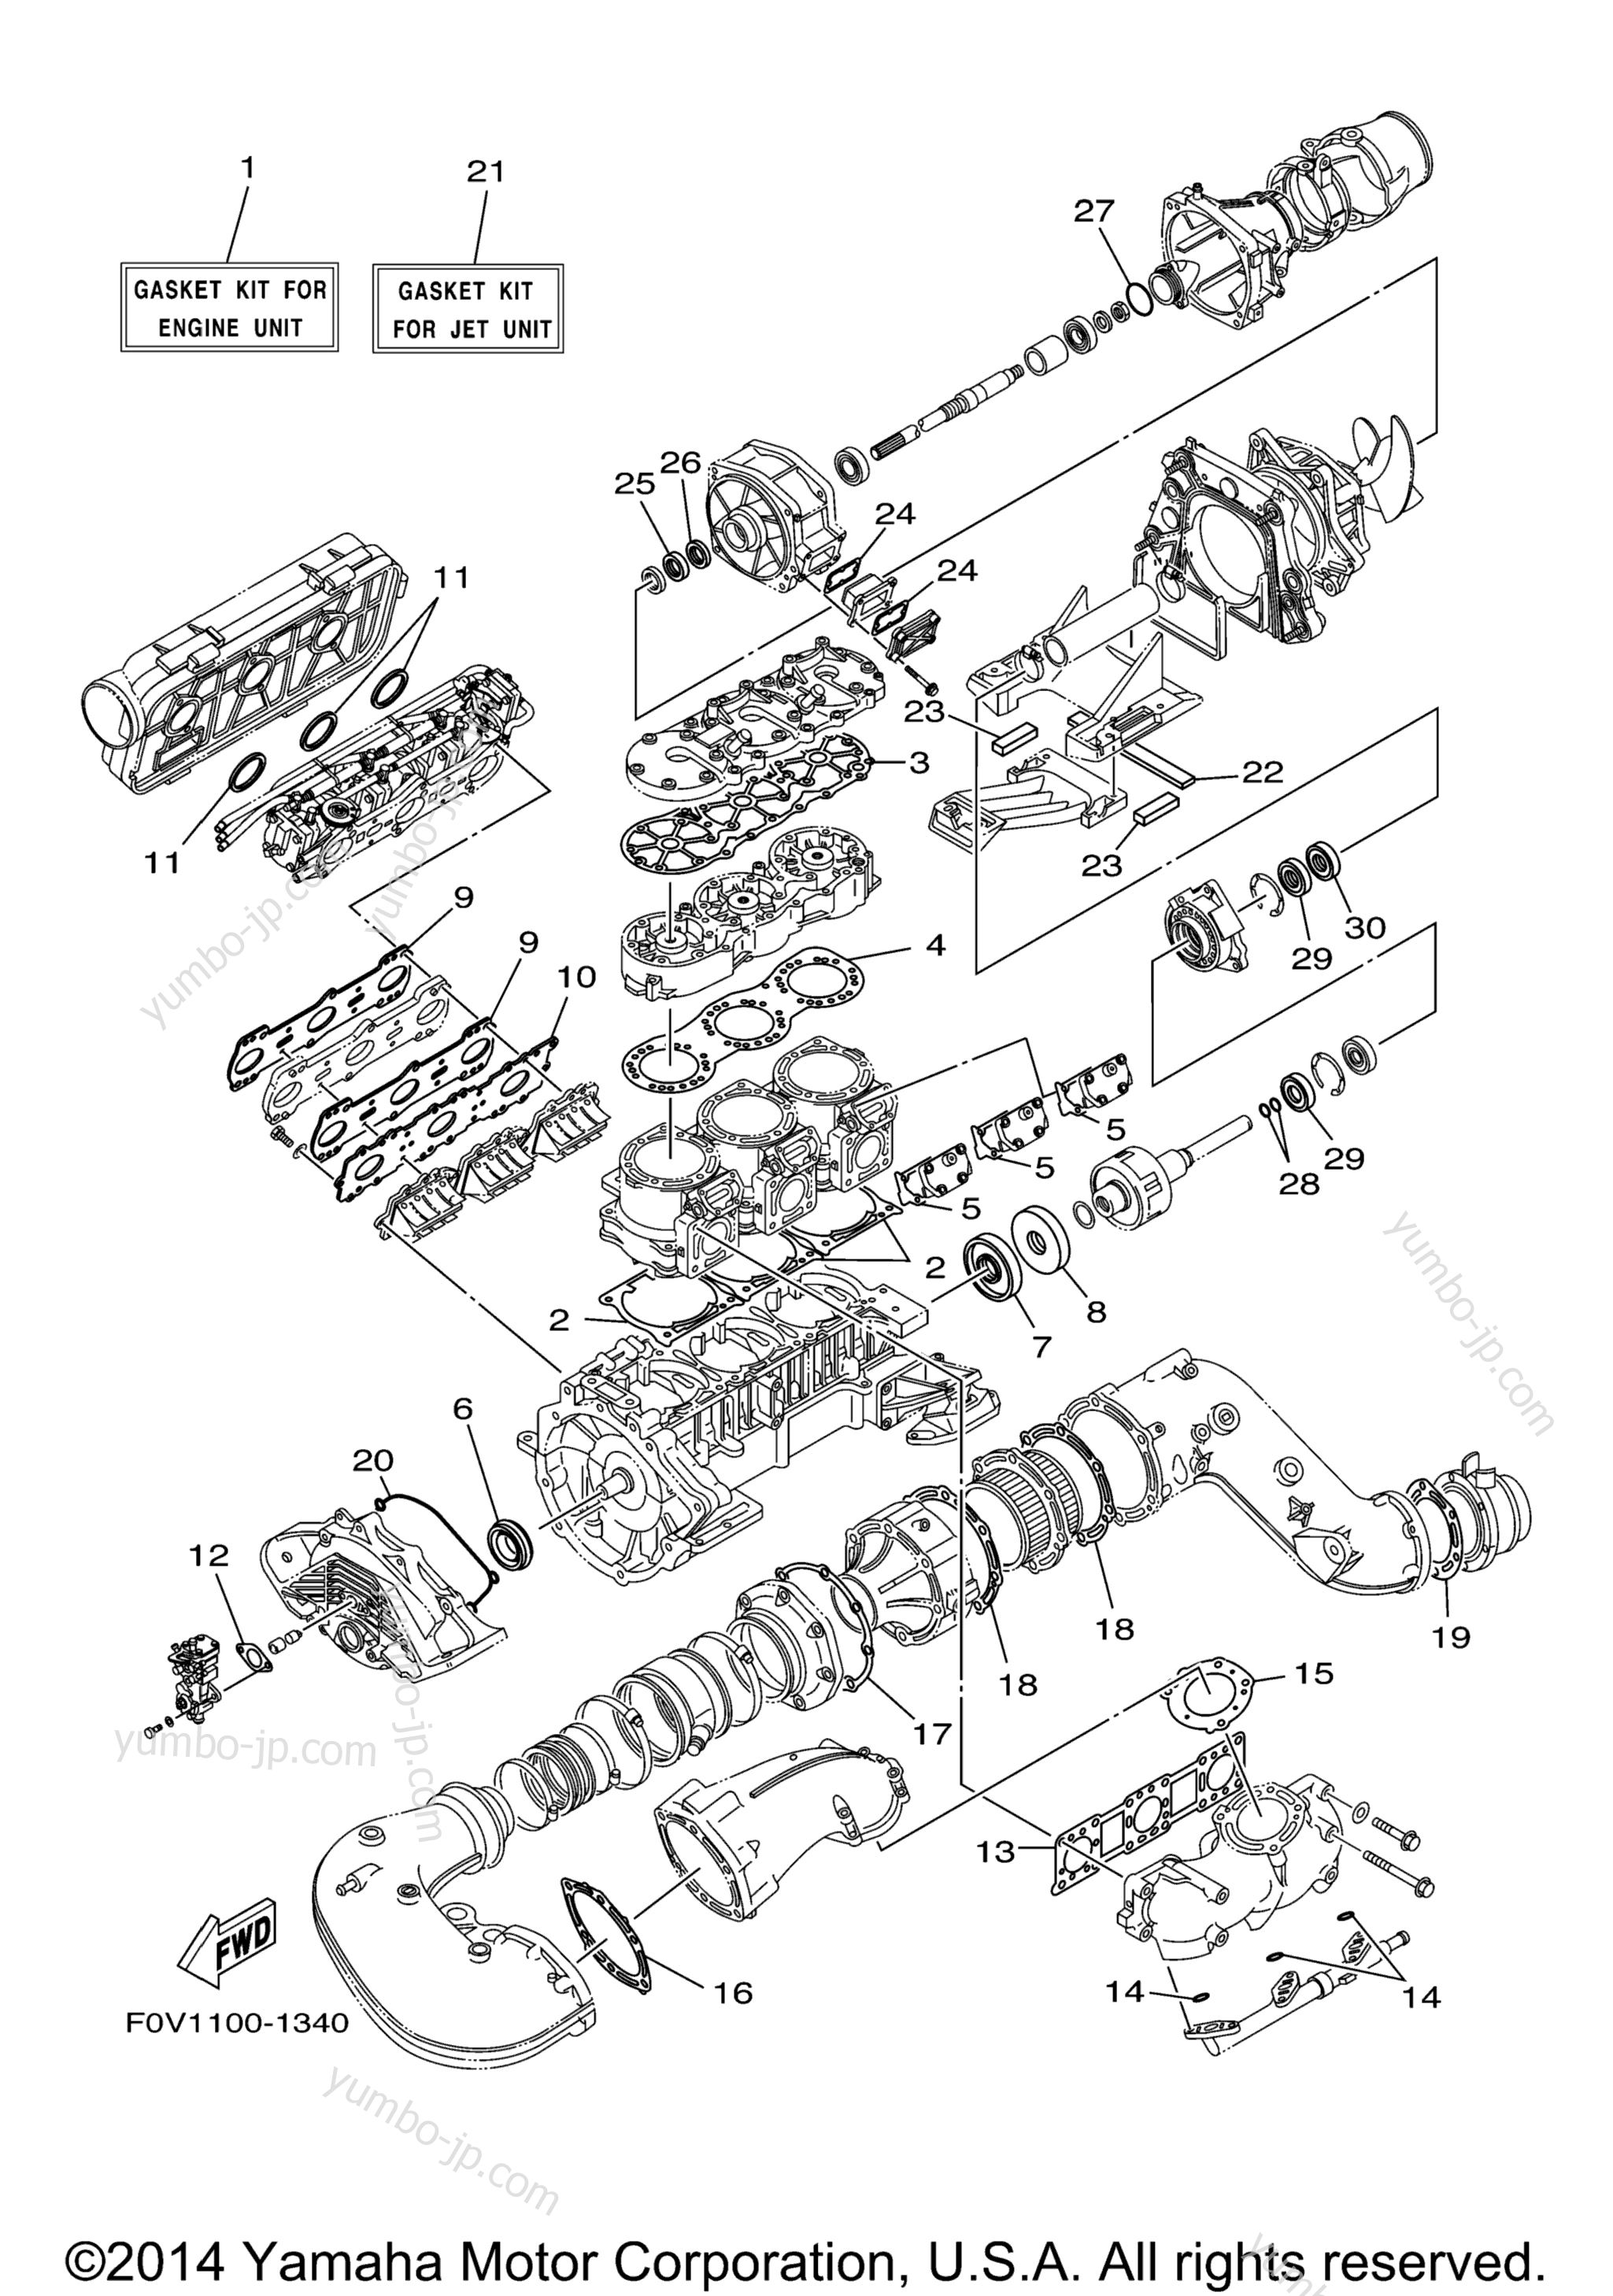 Repair Kit 1 для гидроциклов YAMAHA XLT1200 (XA1200AB) 2003 г.